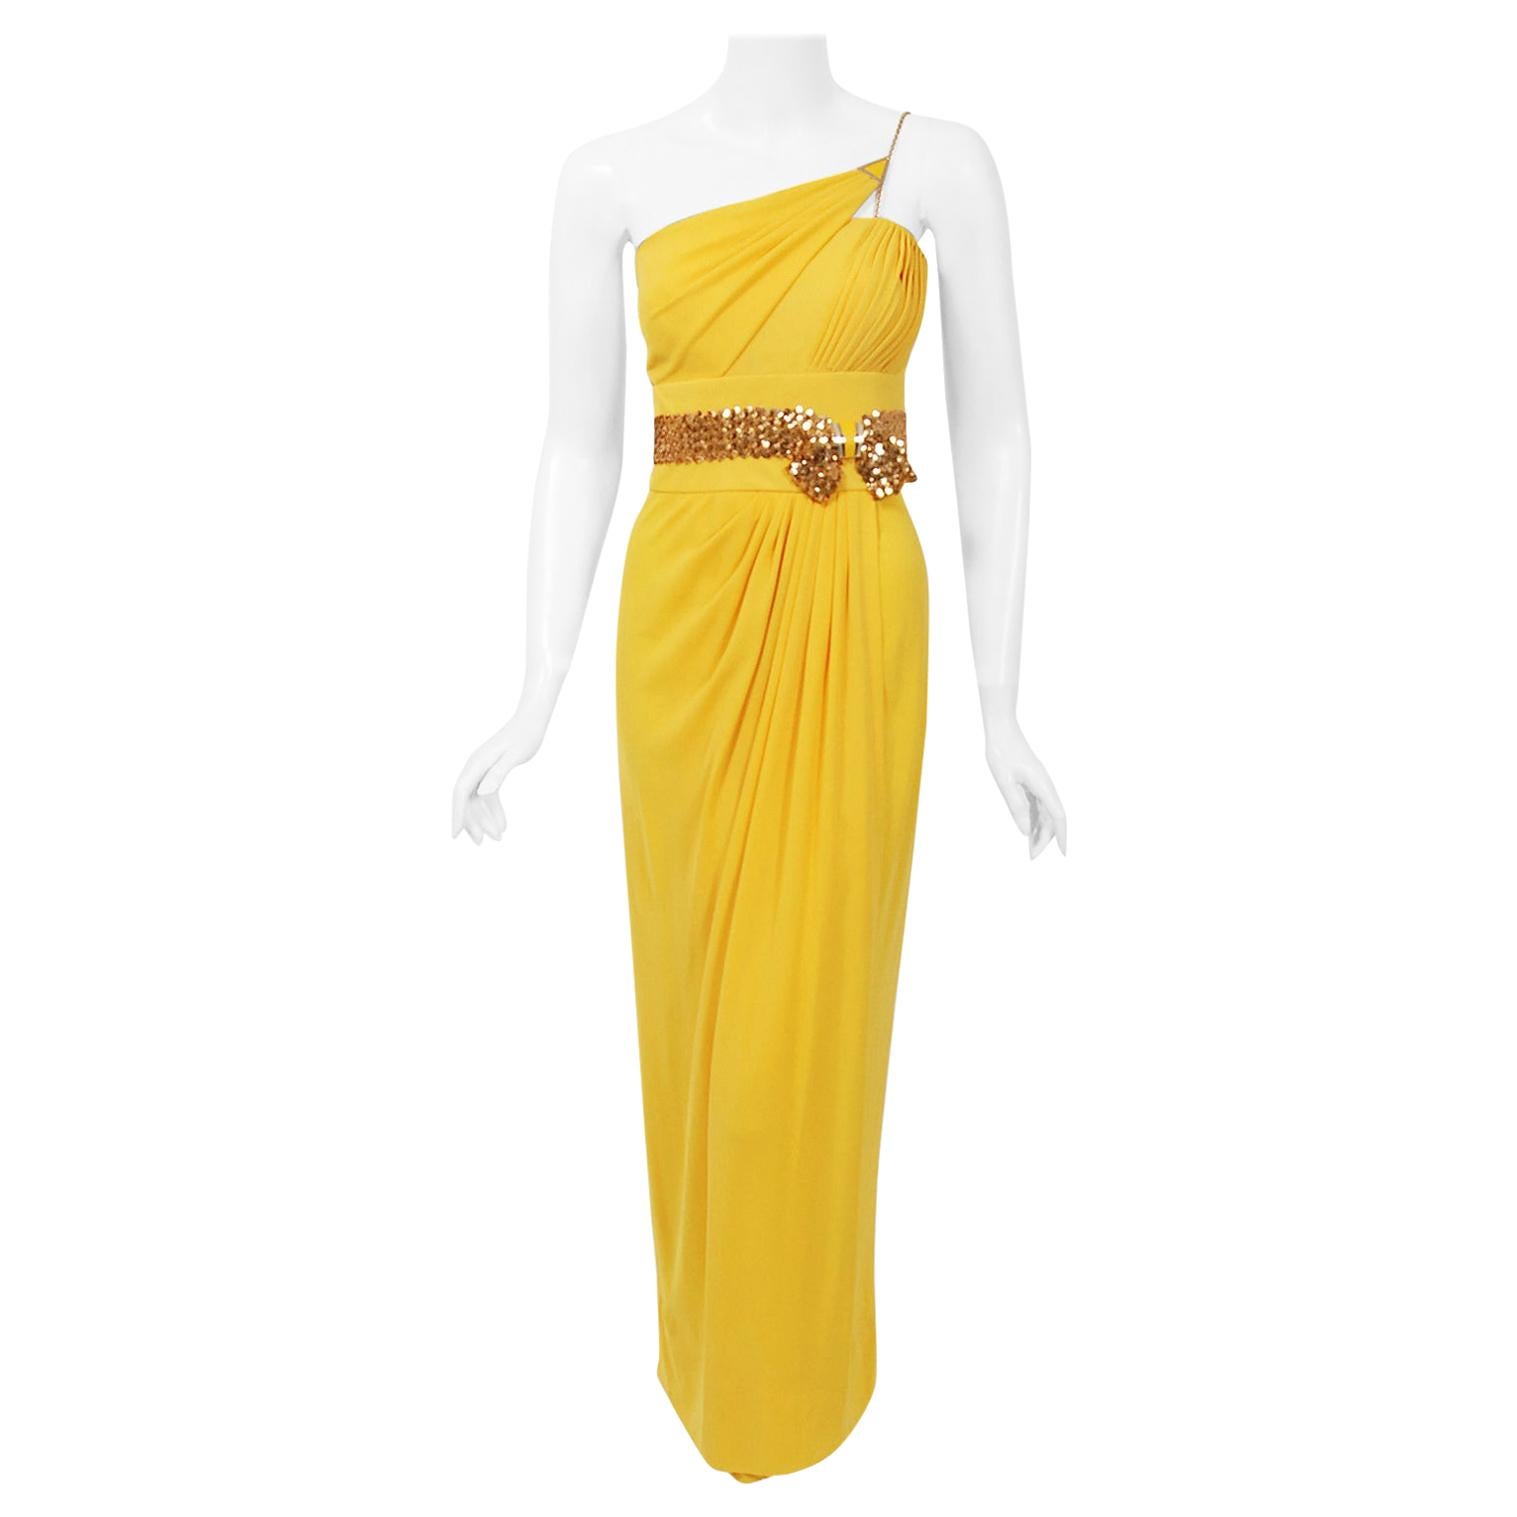 yellow draped dress